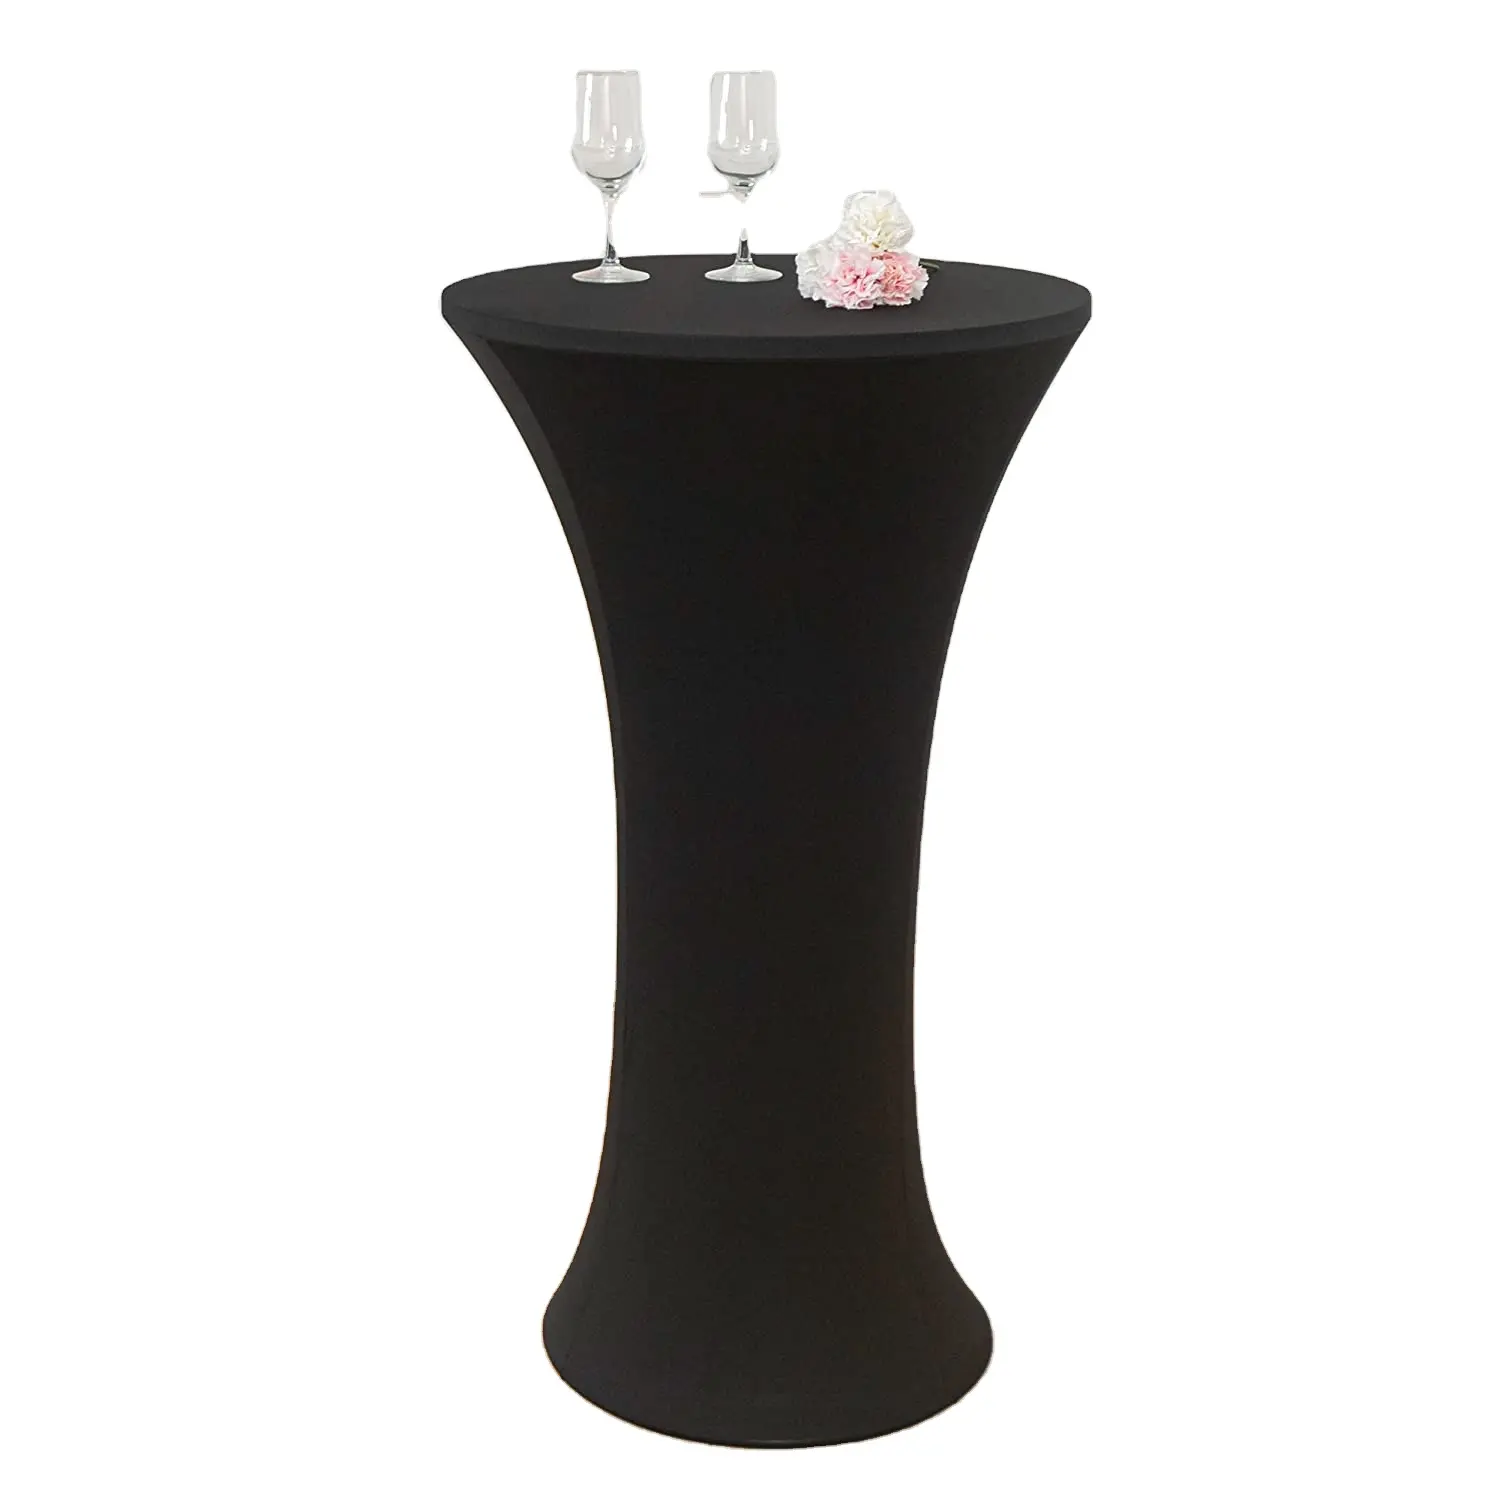 תחרותי מחיר שחור קוקטייל ביסטרו בר עומד ספנדקס שולחן כיסוי בד אמנות את מפת שולחן כיסוי עבור חיצוני שולחן